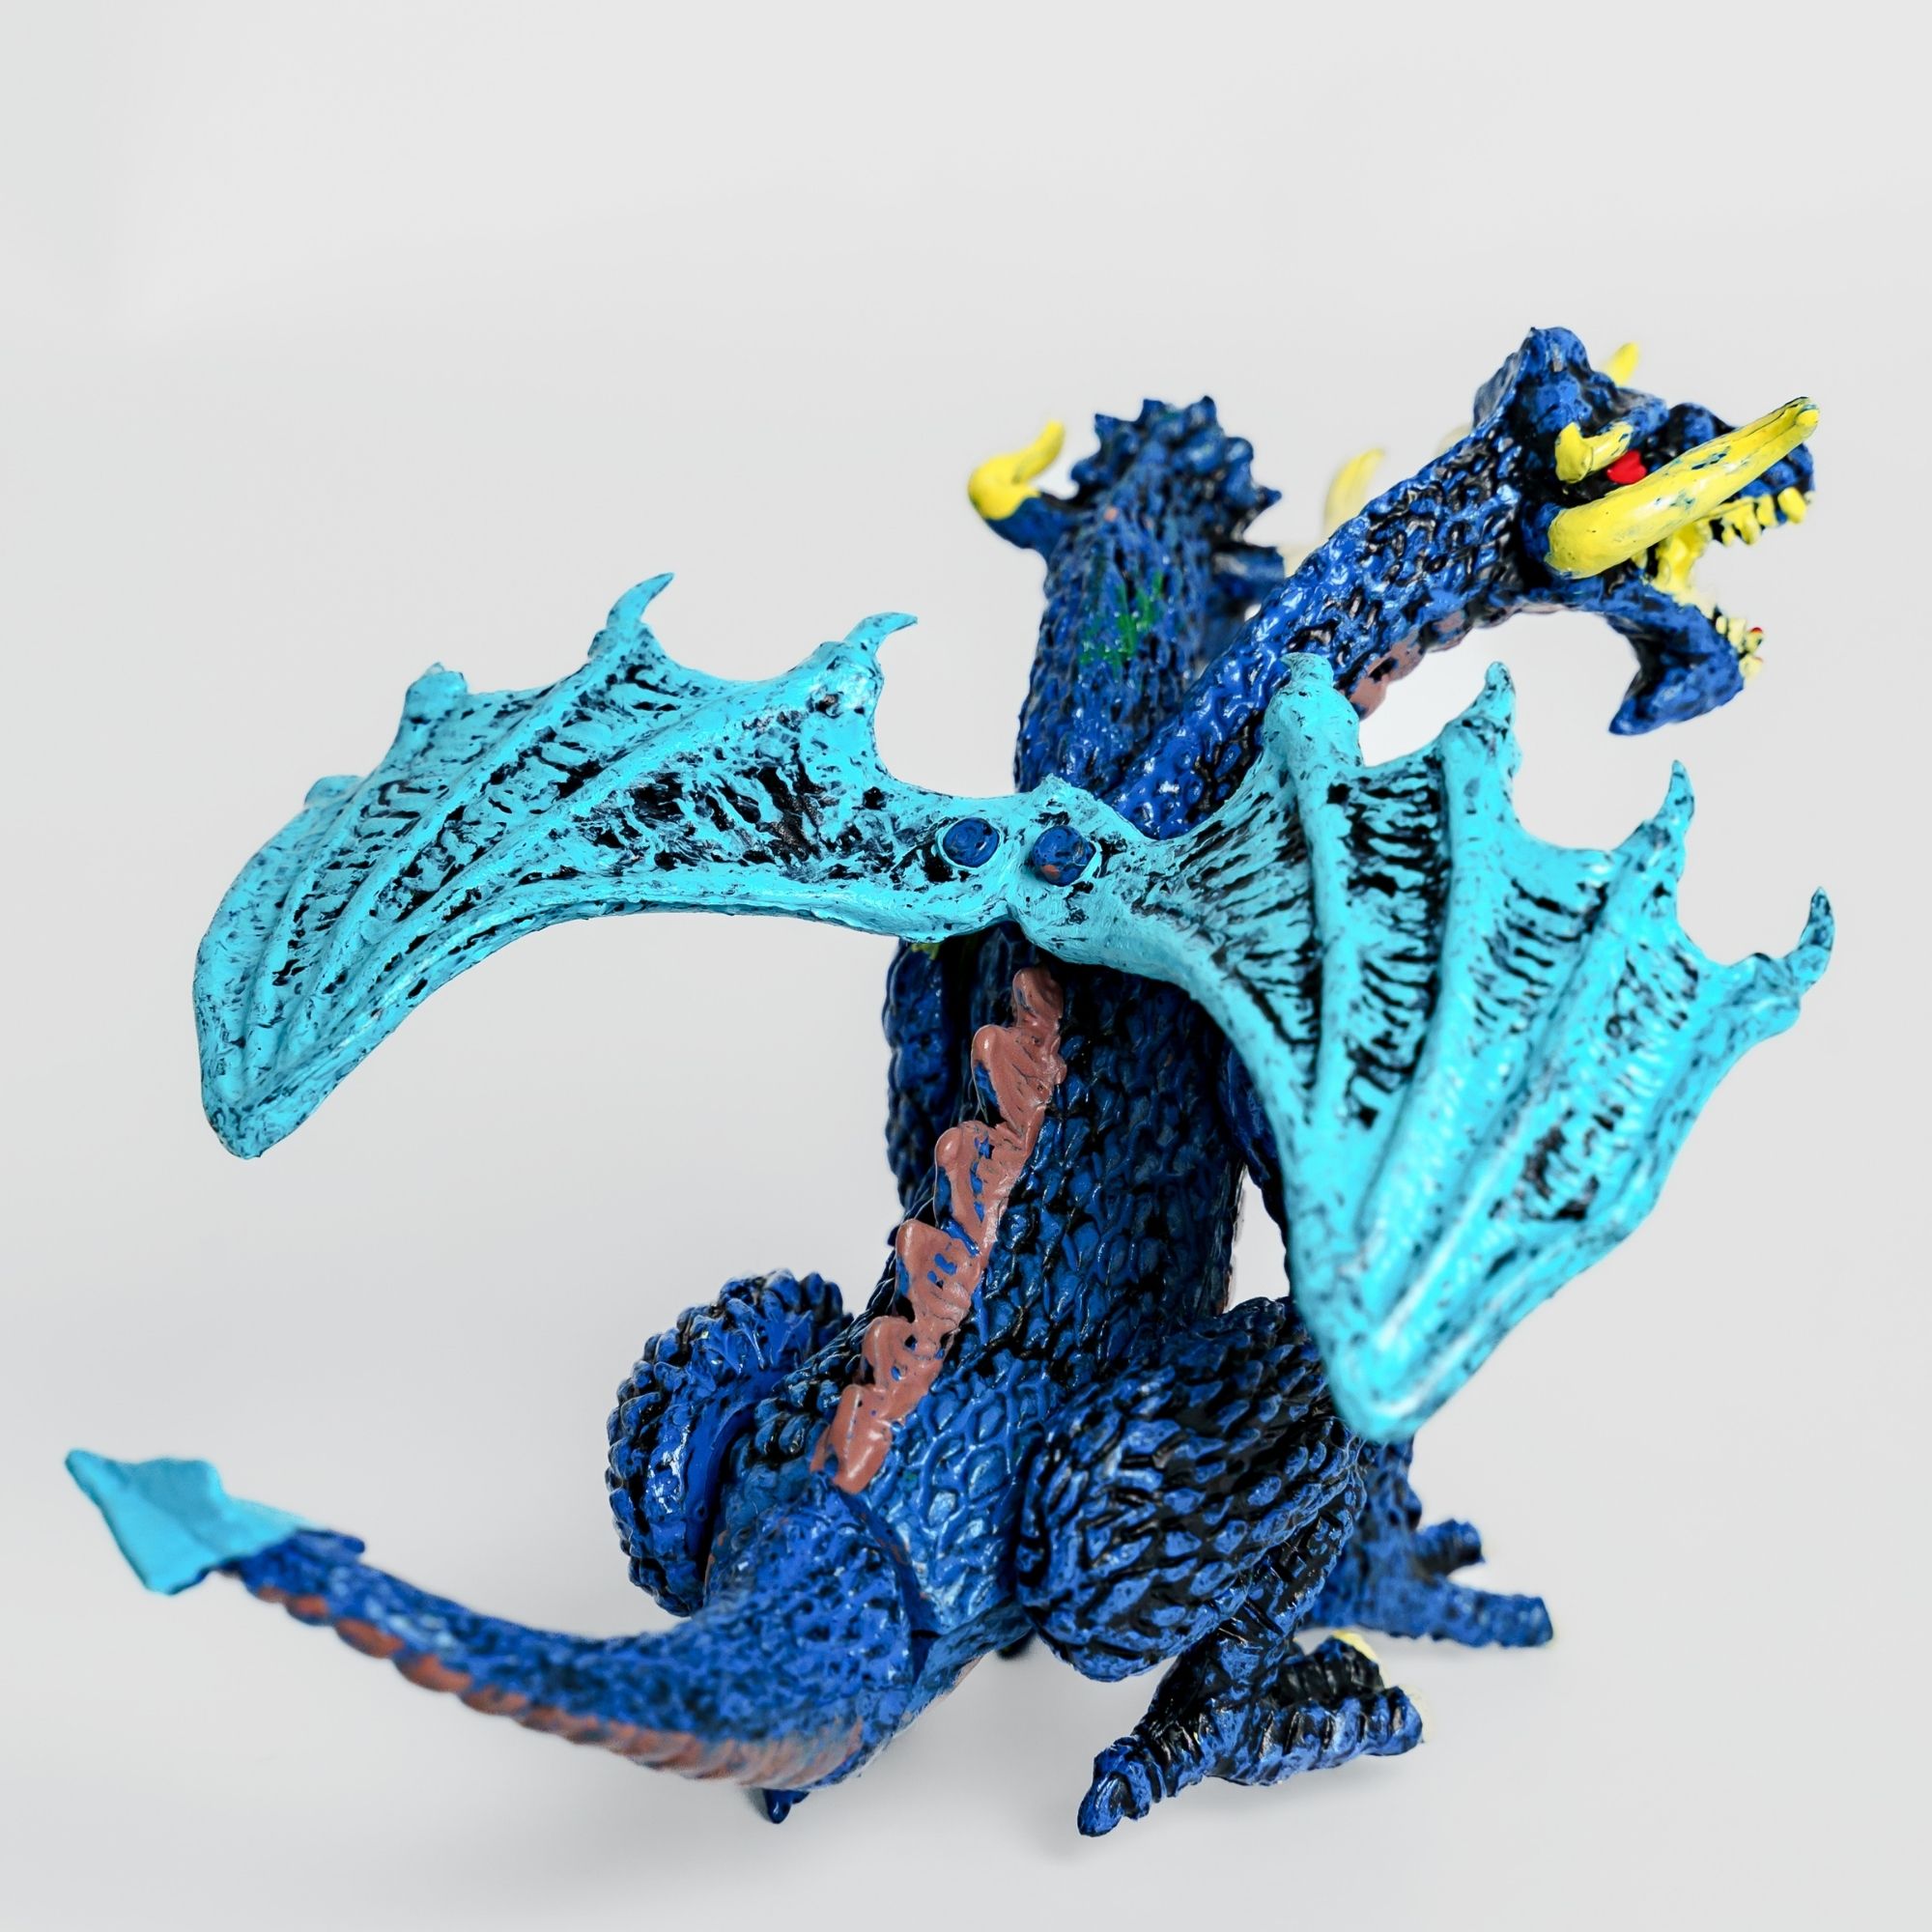 Фигурки BATTLETIME два боевых двуглавых дракона для детей развивающие коллекционные - фото 5